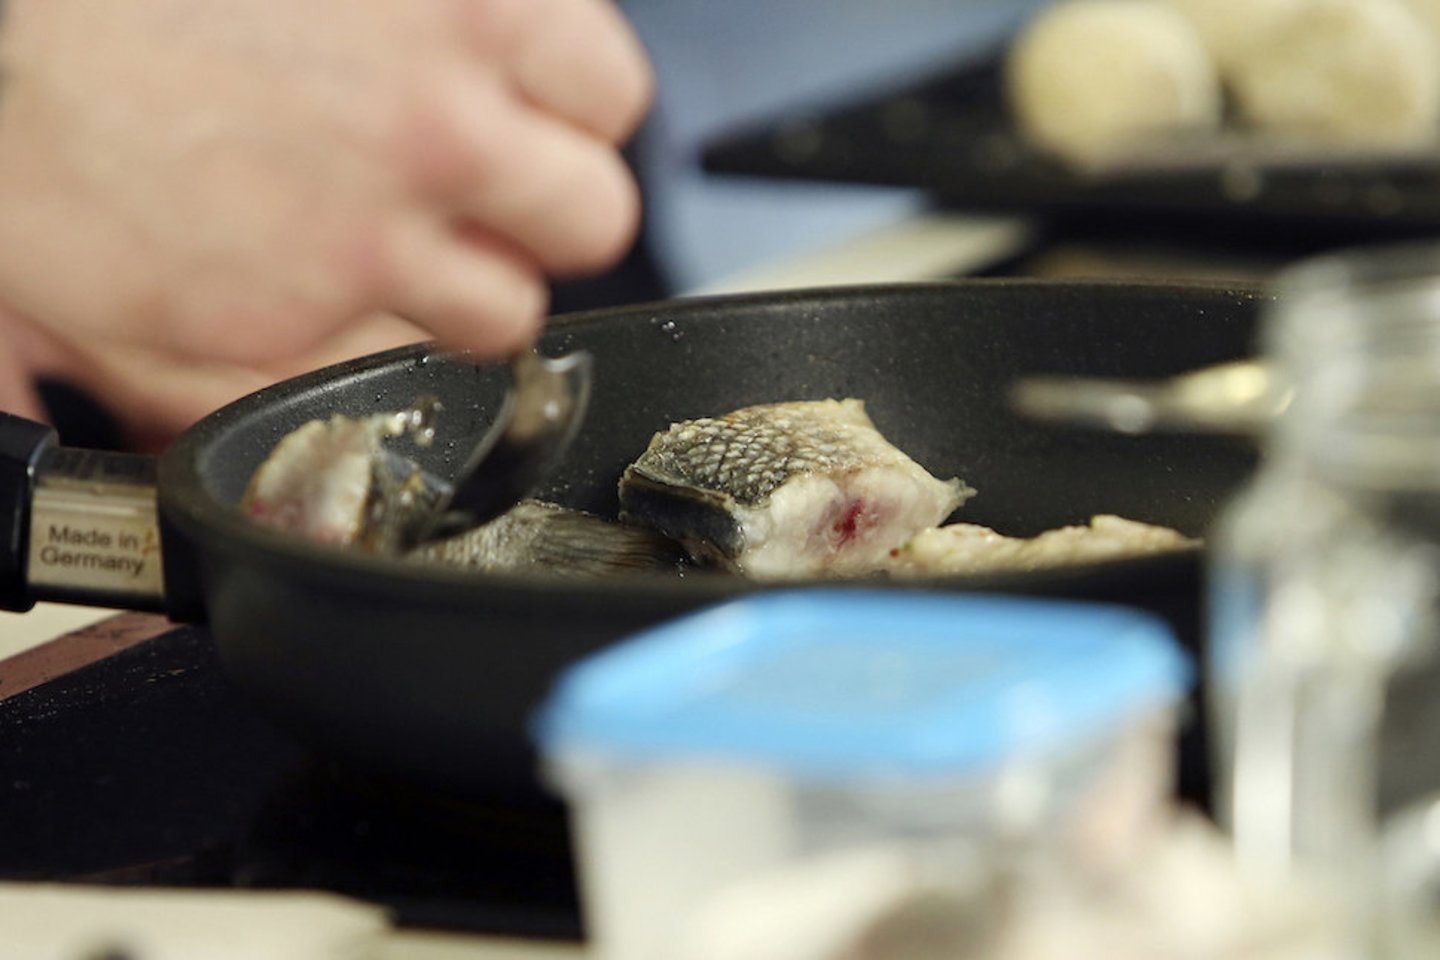 Šefai pristatė Skandinavijos virtuvei būdingus patiekalus, paruoštus puoselėjant tvarumo praktikas.